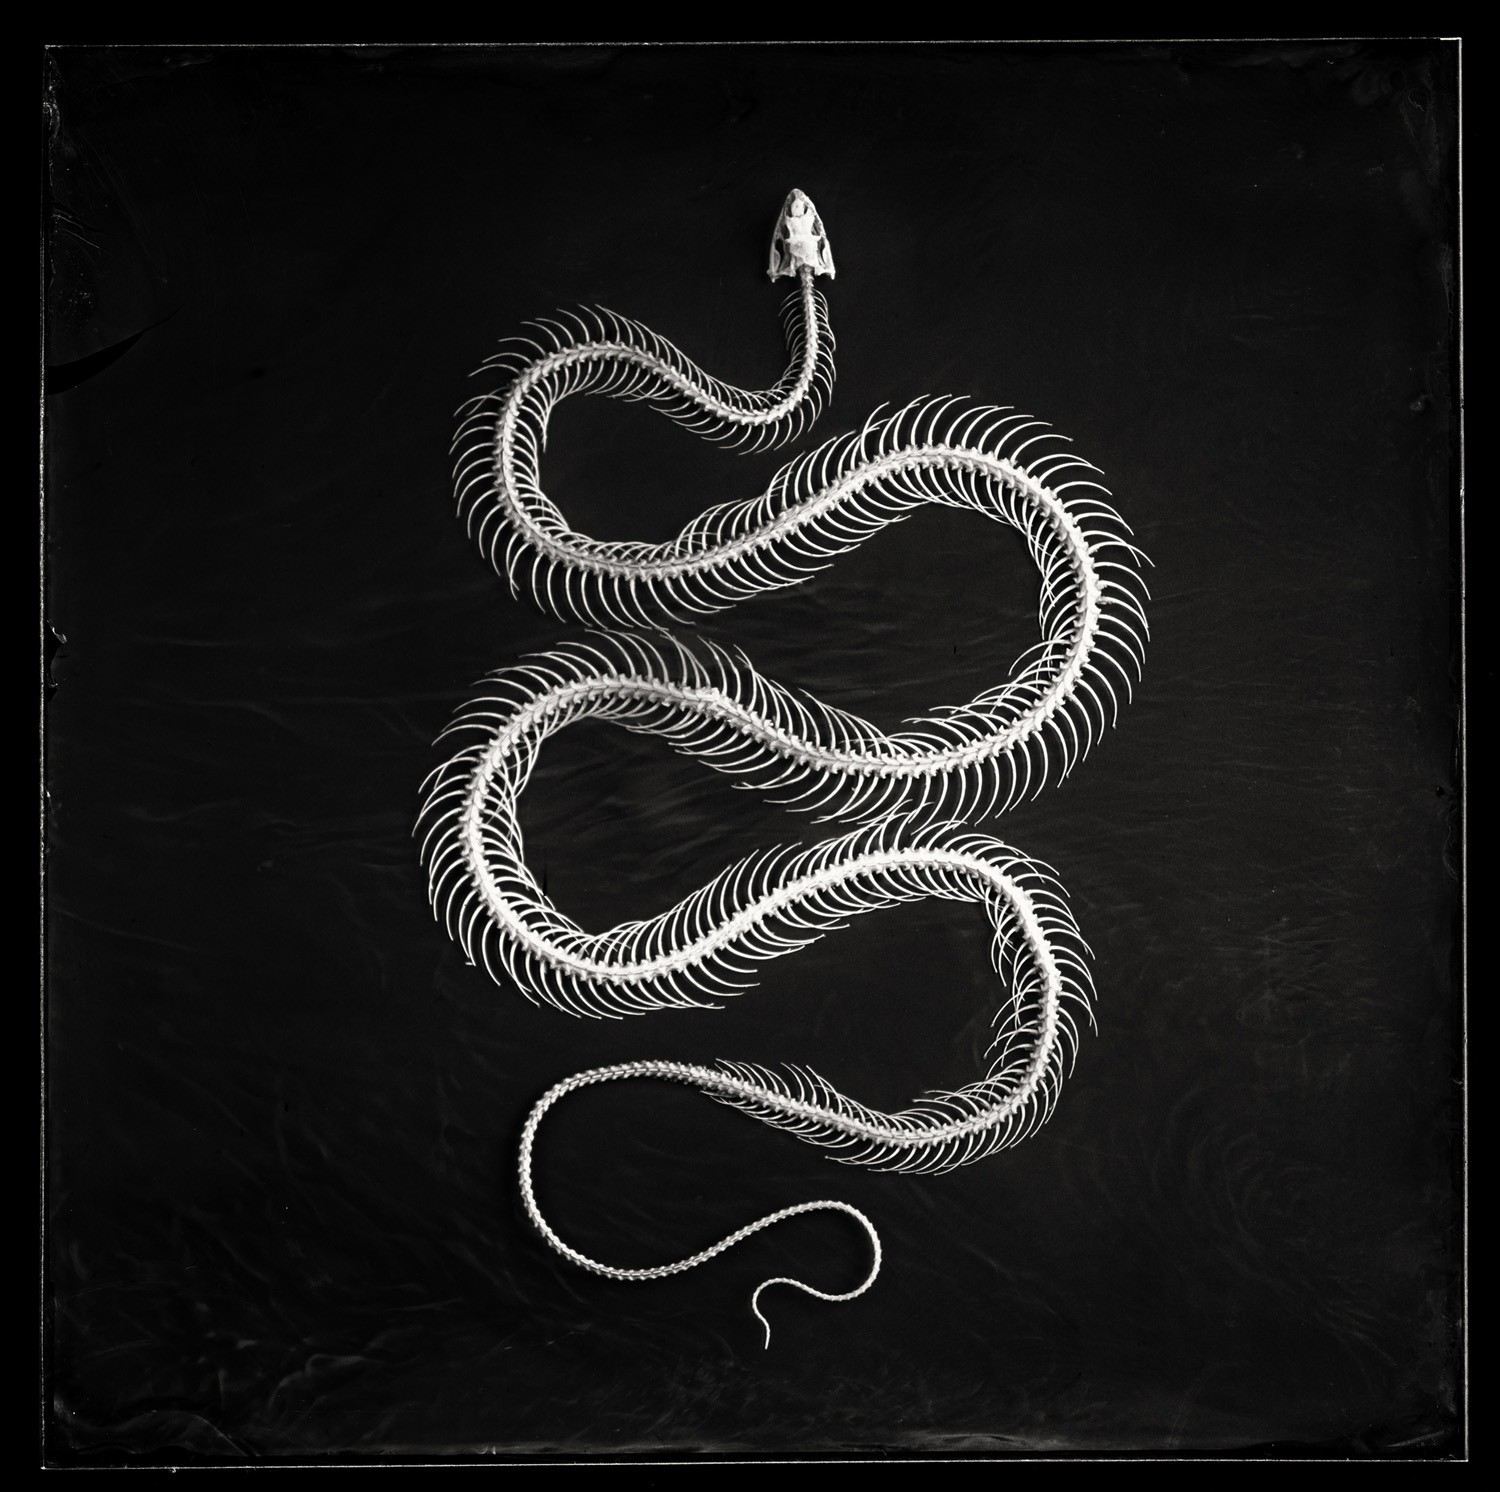 «Скелет змеи». 3 место в категории «Файн-арт». Автор Питер Элевелд